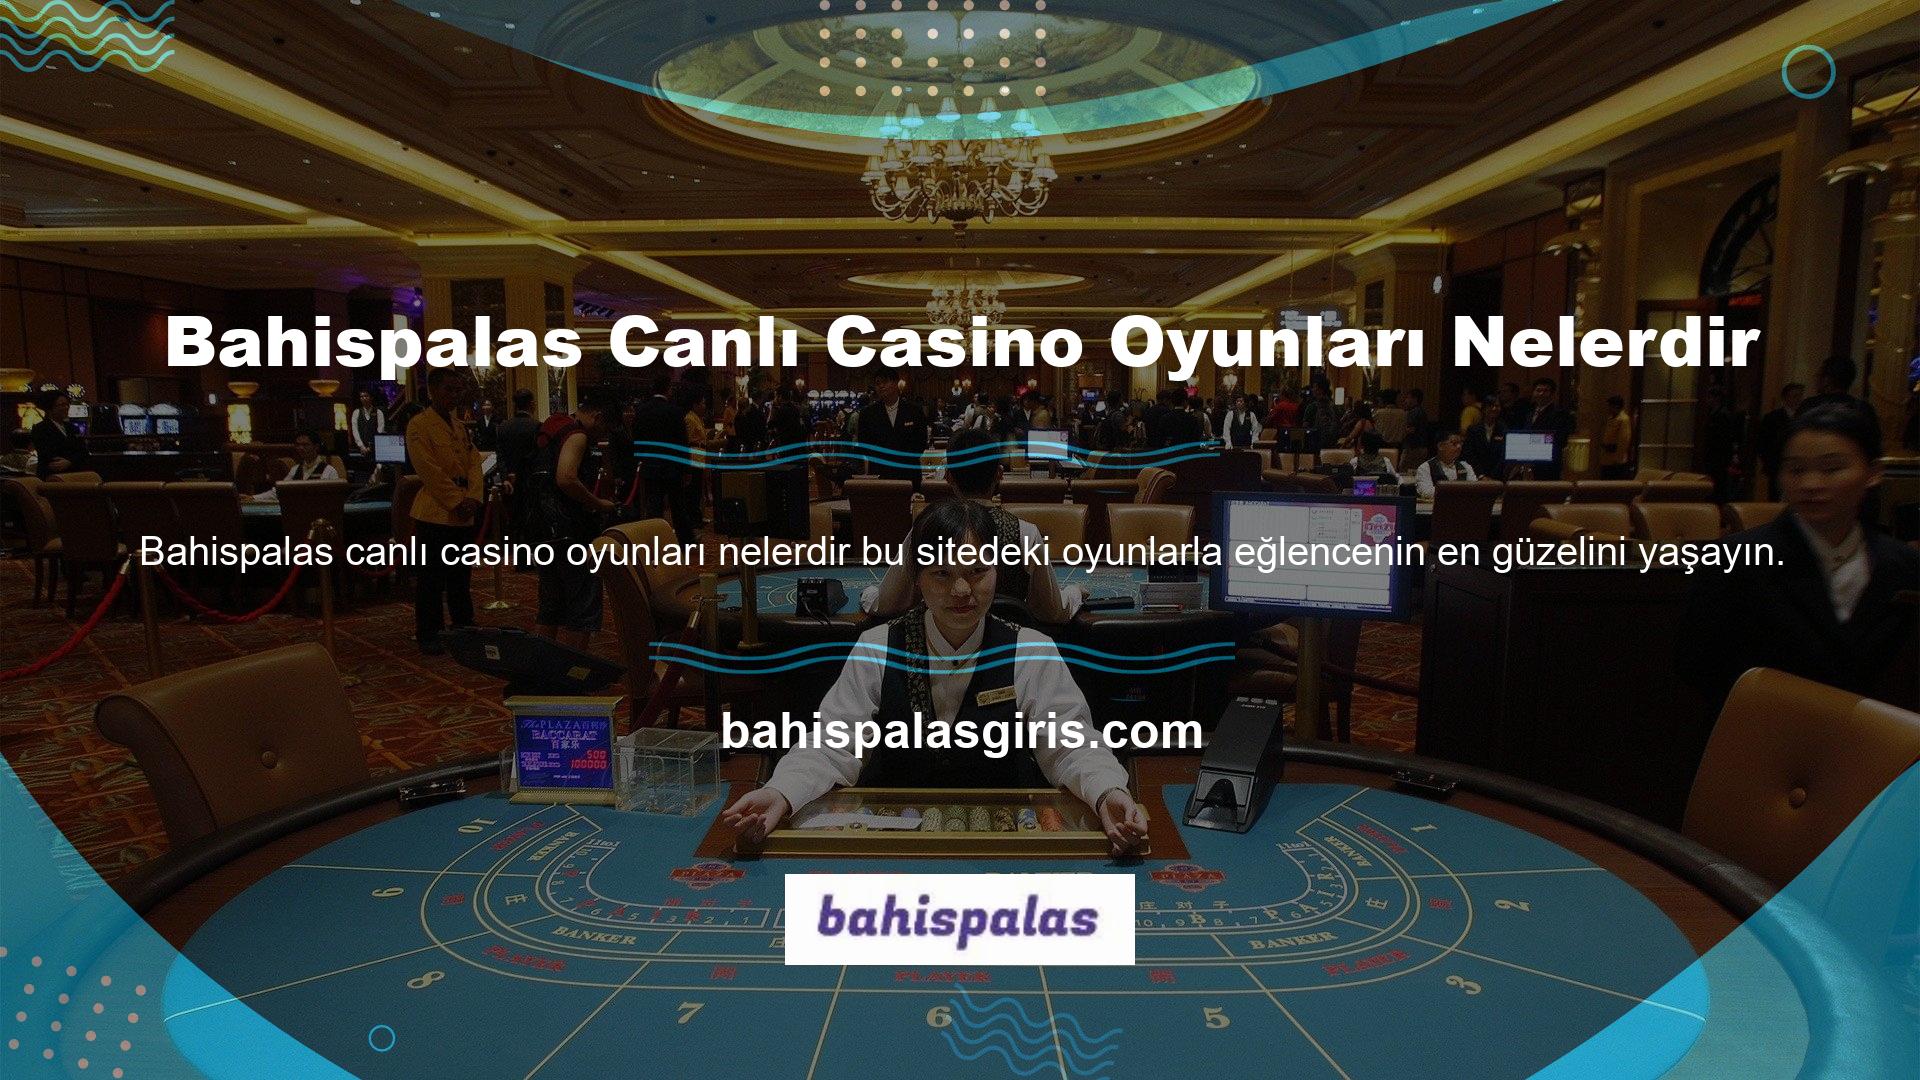 Bahispalas canlı casino sitesi blackjack, rulet, poker, bakara ve daha fazlasını sunuyor